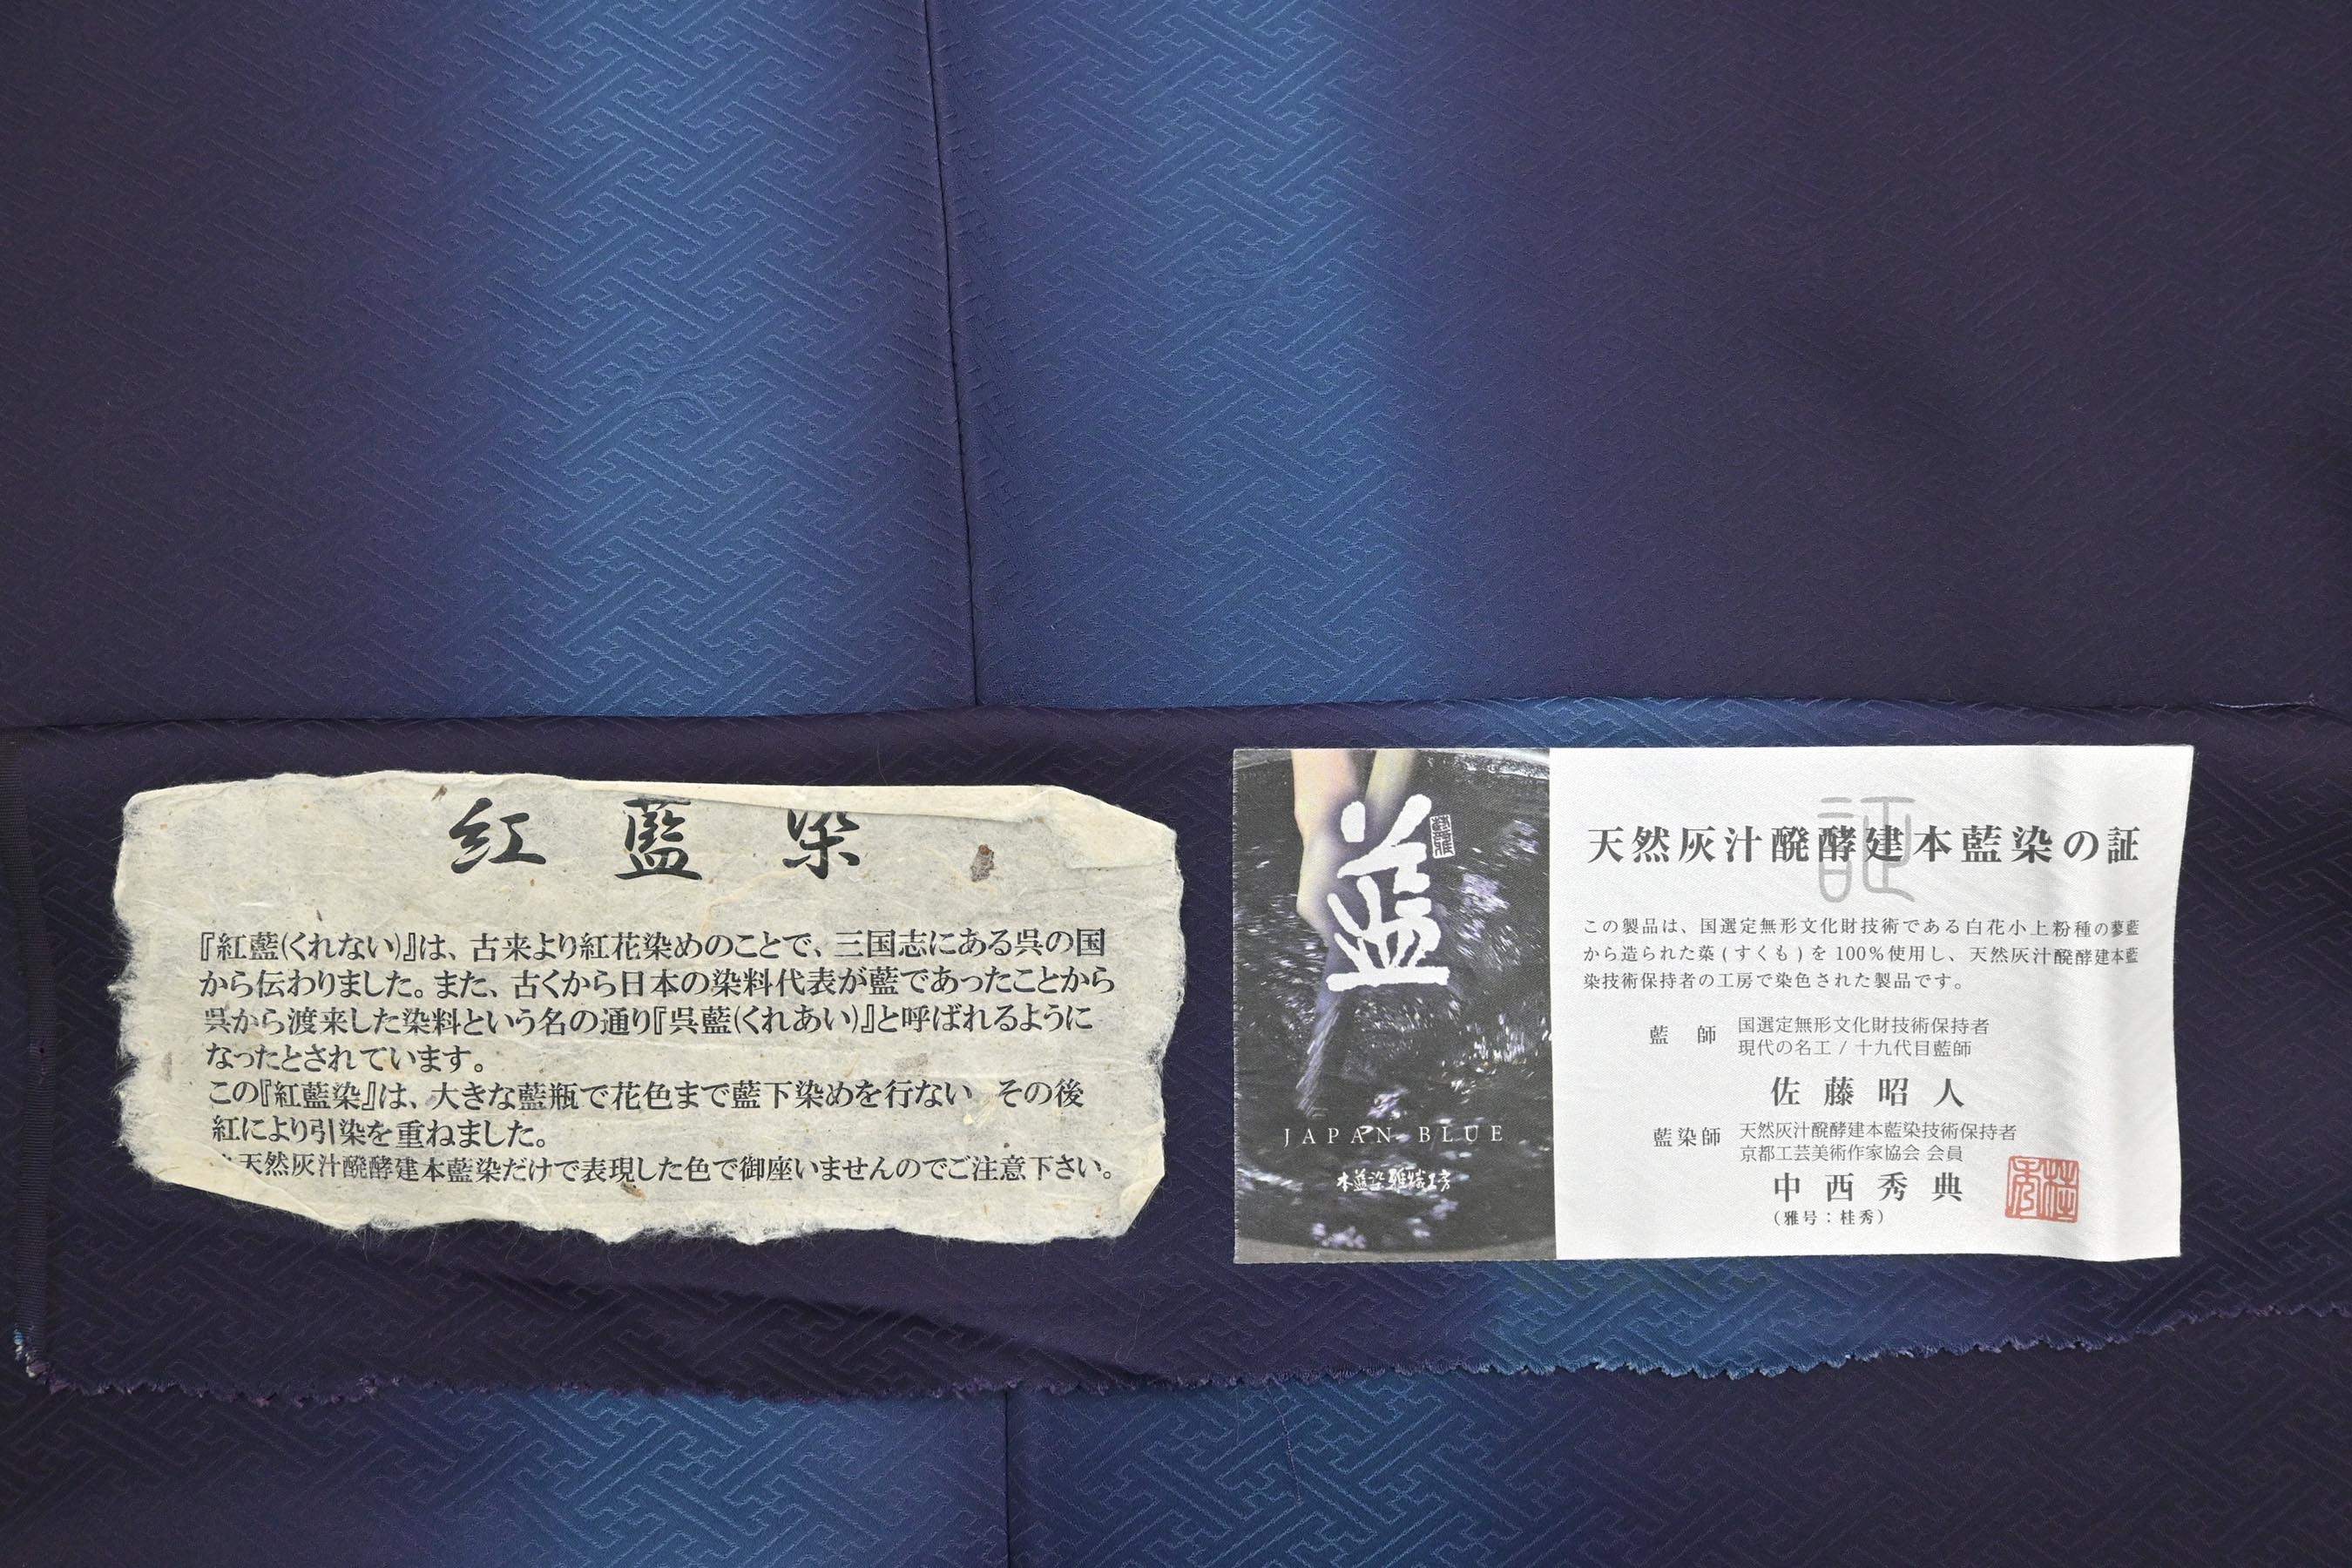 天然阿波藍 現代の名工 佐藤昭人 灰汁発酵建本藍染本藍染